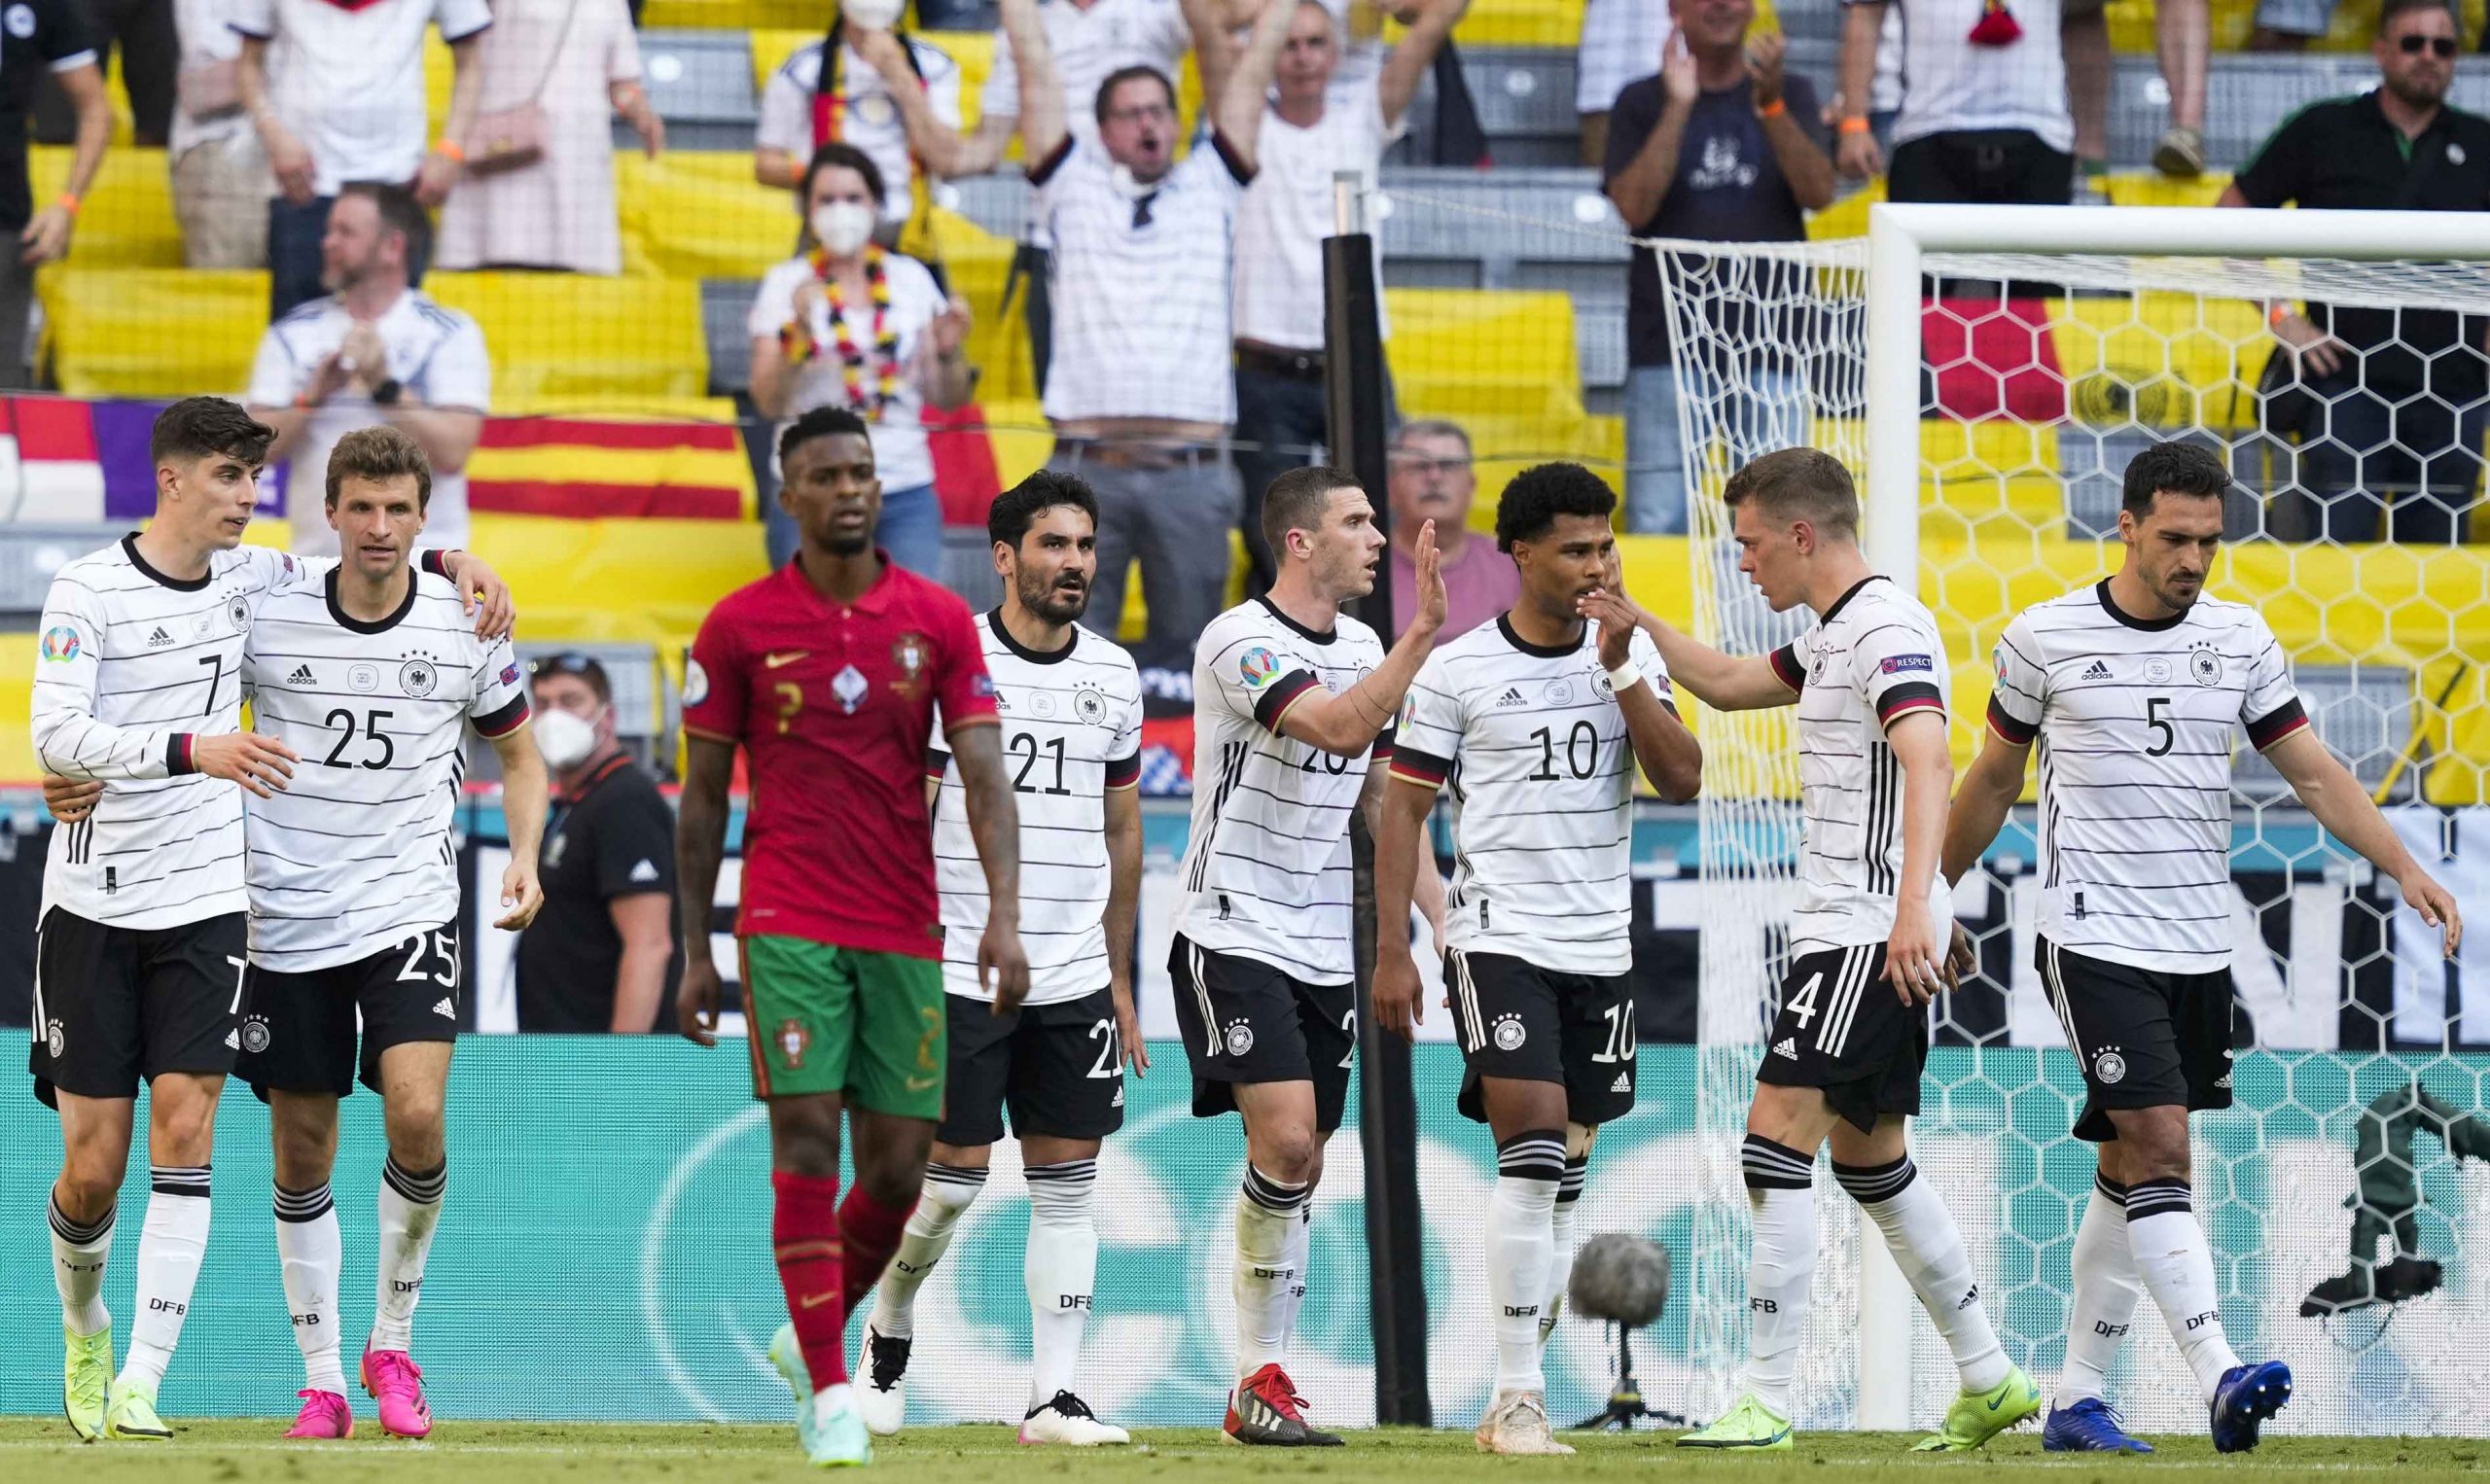 Los jugadores de Alemania celebran el empate durante el partido de fútbol de la ronda preliminar del grupo F de la UEFA EURO 2020 entre Portugal y Alemania en Munich, Alemania, el 19 de junio de 2021. (Alemania) EFE